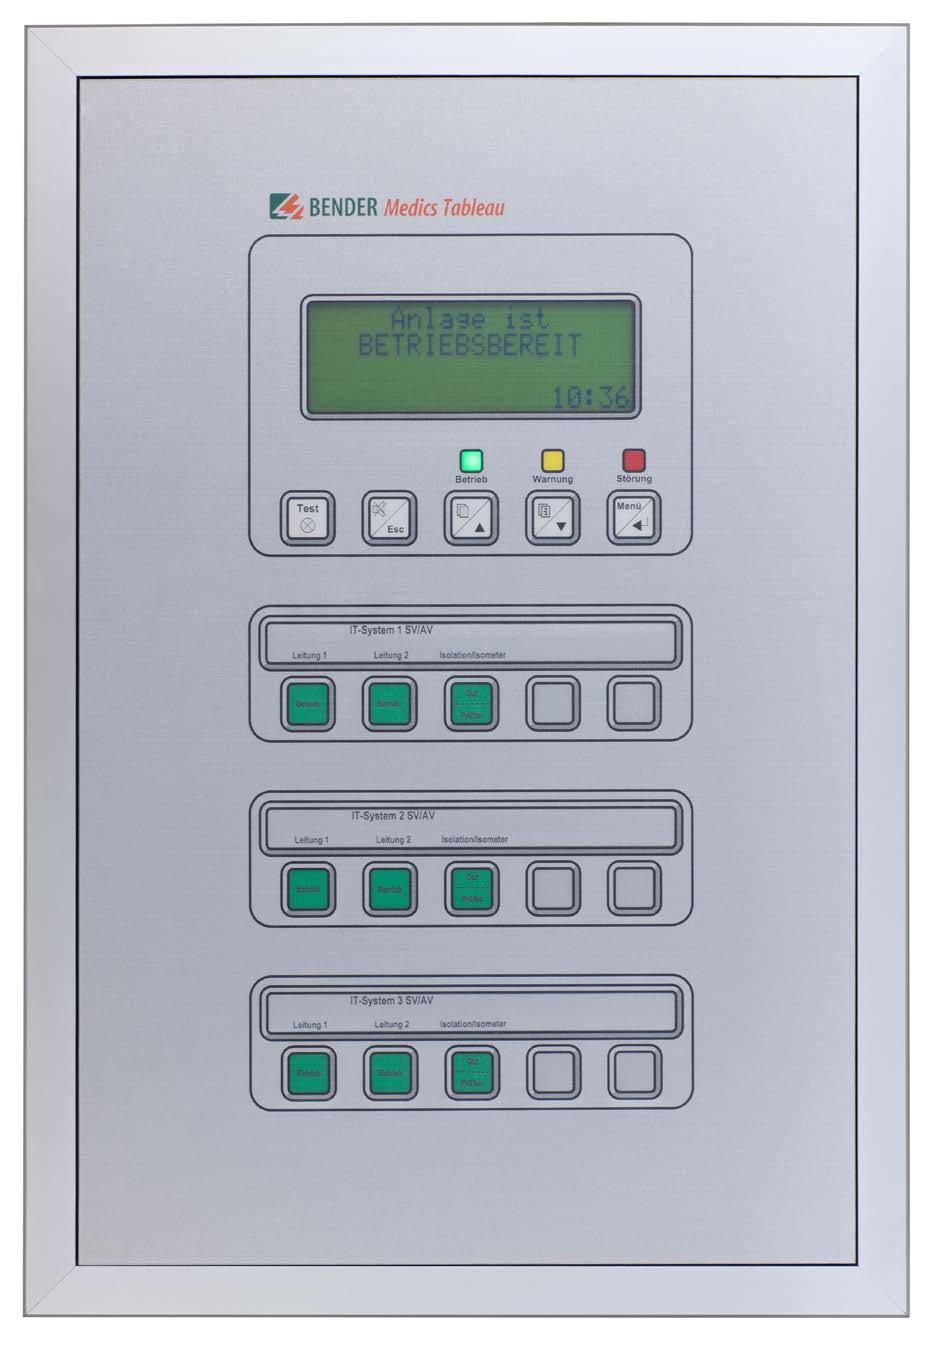 TM800 Remote alarm indicator and